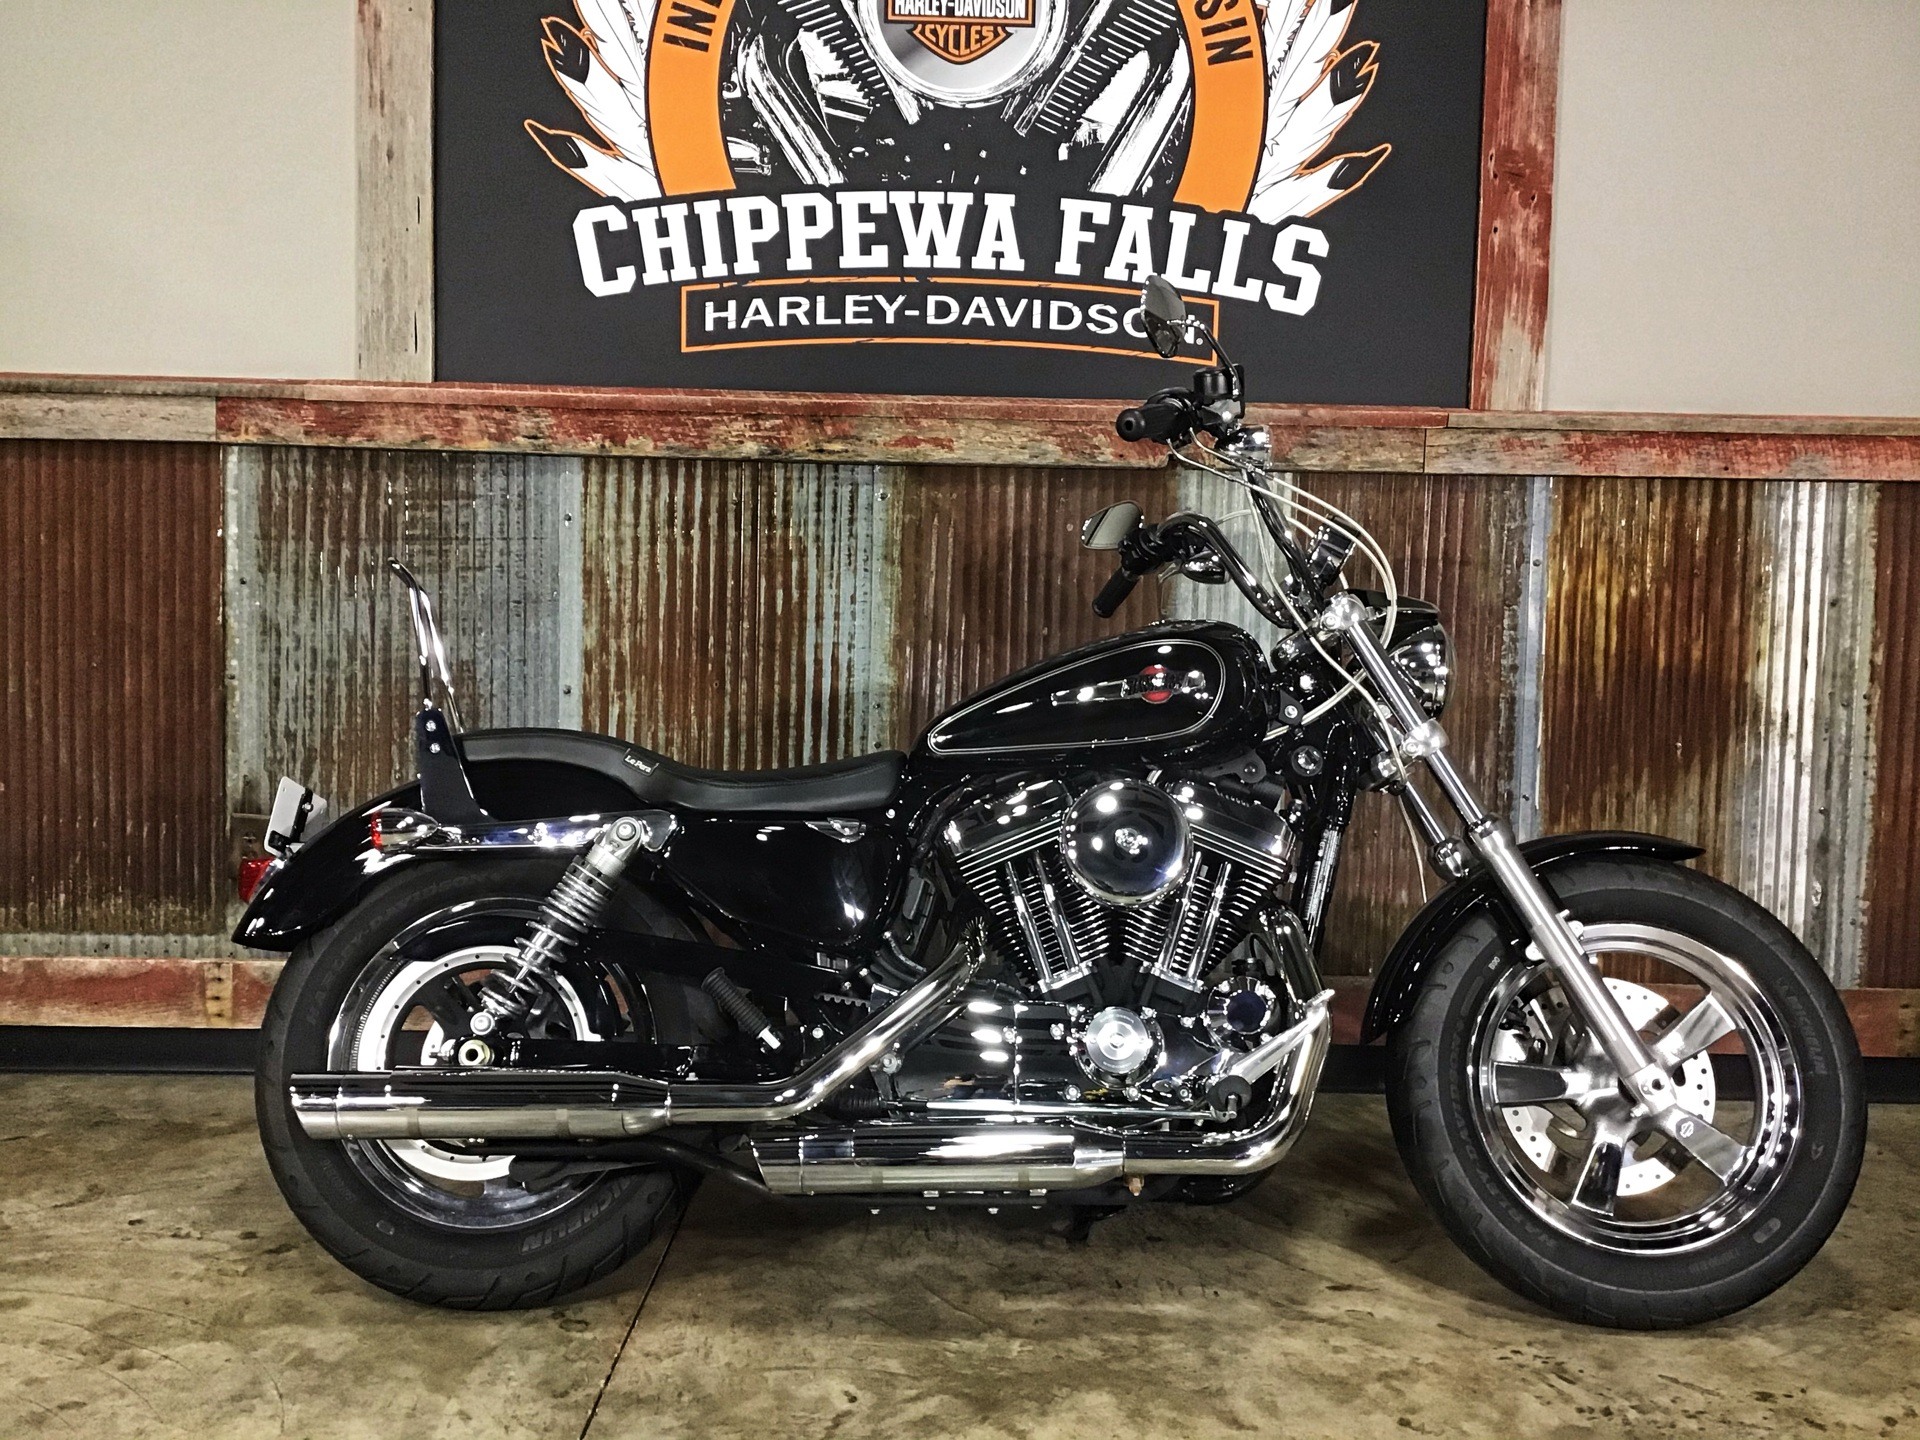 used 2016 harley davidson 1200 custom vivid black motorcycles in chippewa falls wi b0393 2016 harley davidson 1200 custom in chippewa falls wisconsin